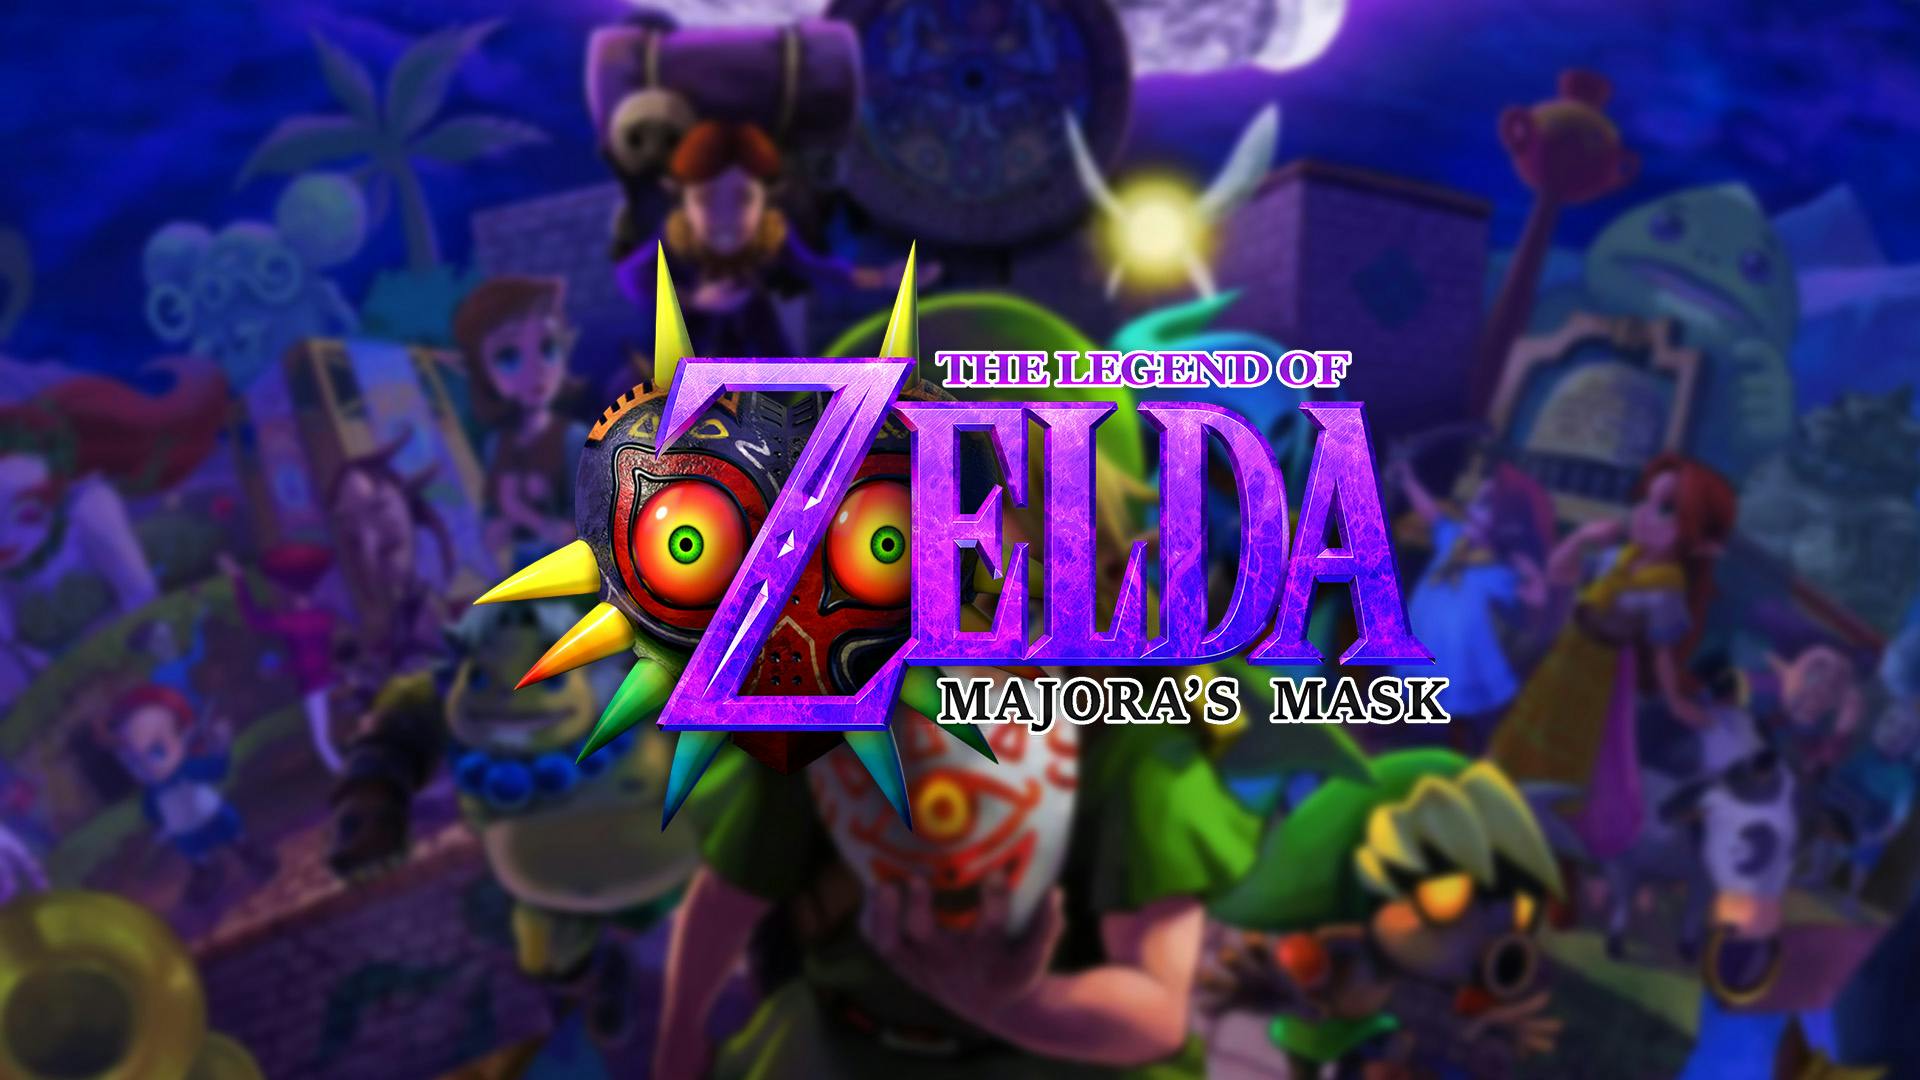 Legend of Zelda: Majora's Mask - 100% Banner Image